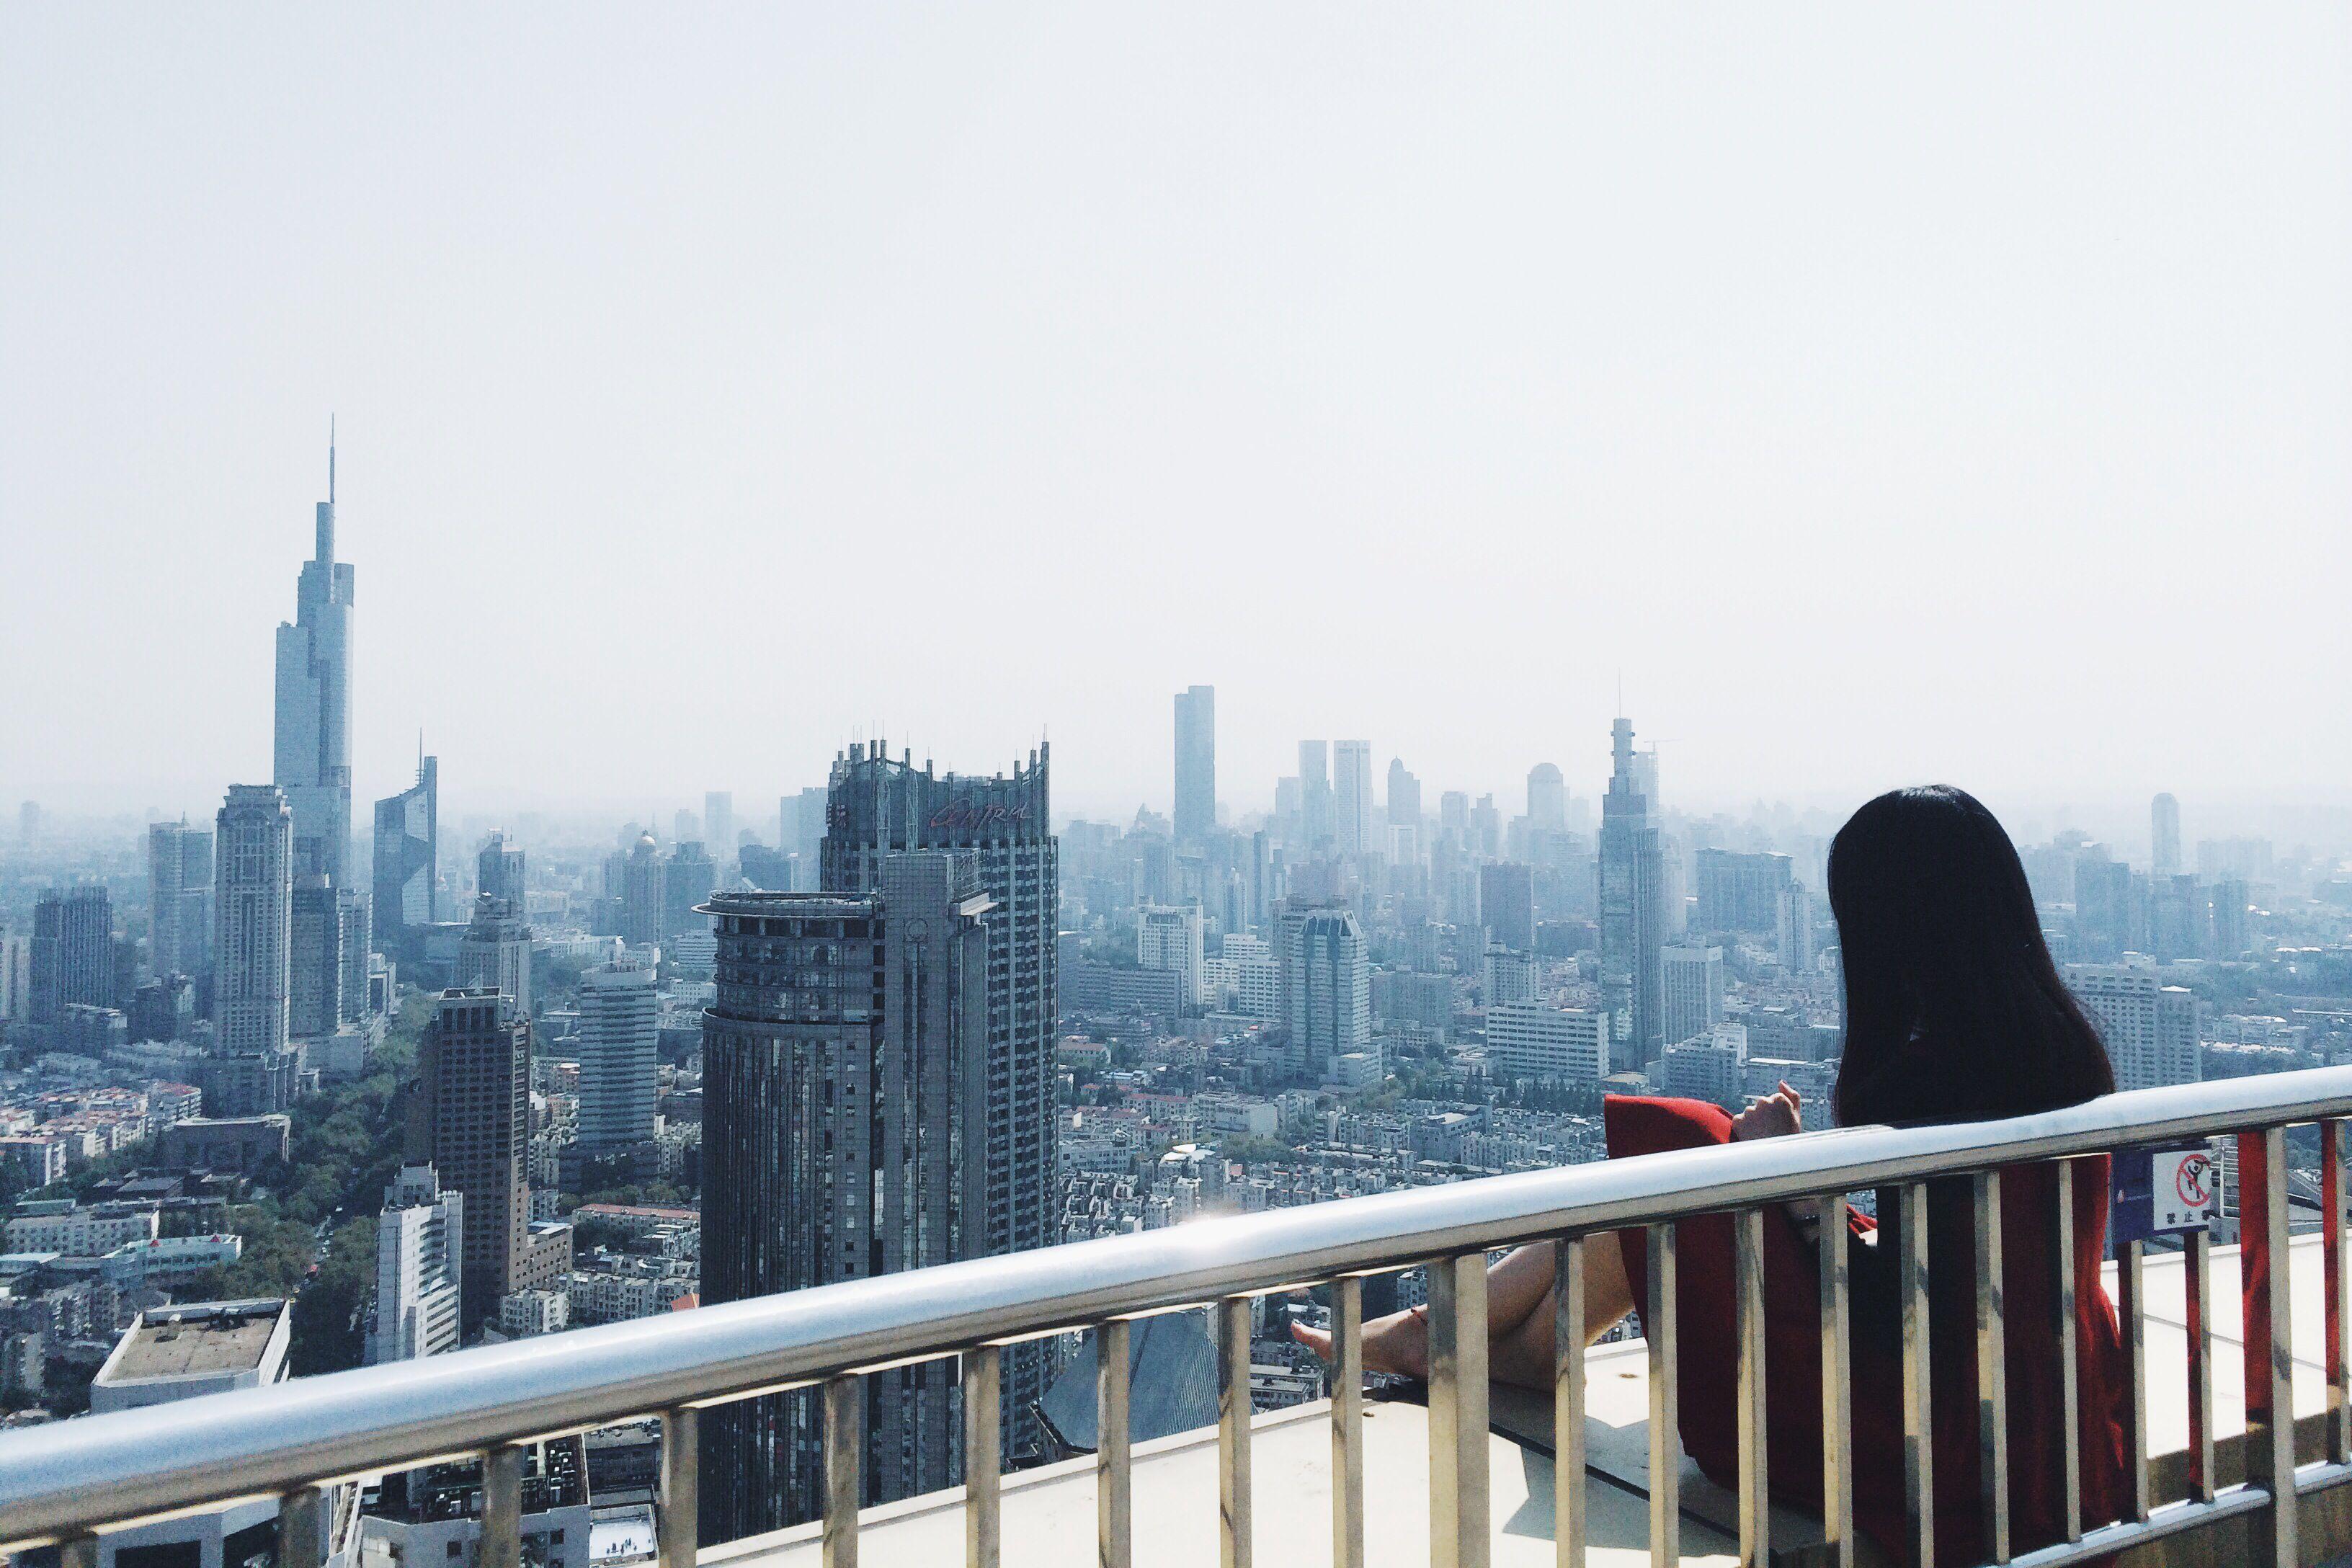 南京哪有高楼楼顶可以上去拍照 看风景?